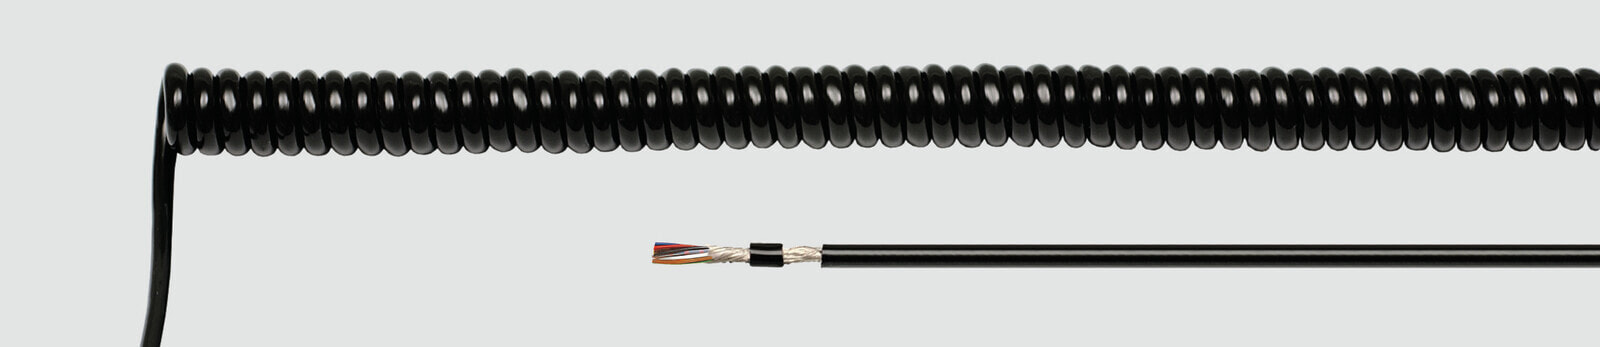 Helukabel 85934 - Low voltage cable - Black - Cooper - 0.14 mm² - 102.6 kg/km - -25 - 70 °C